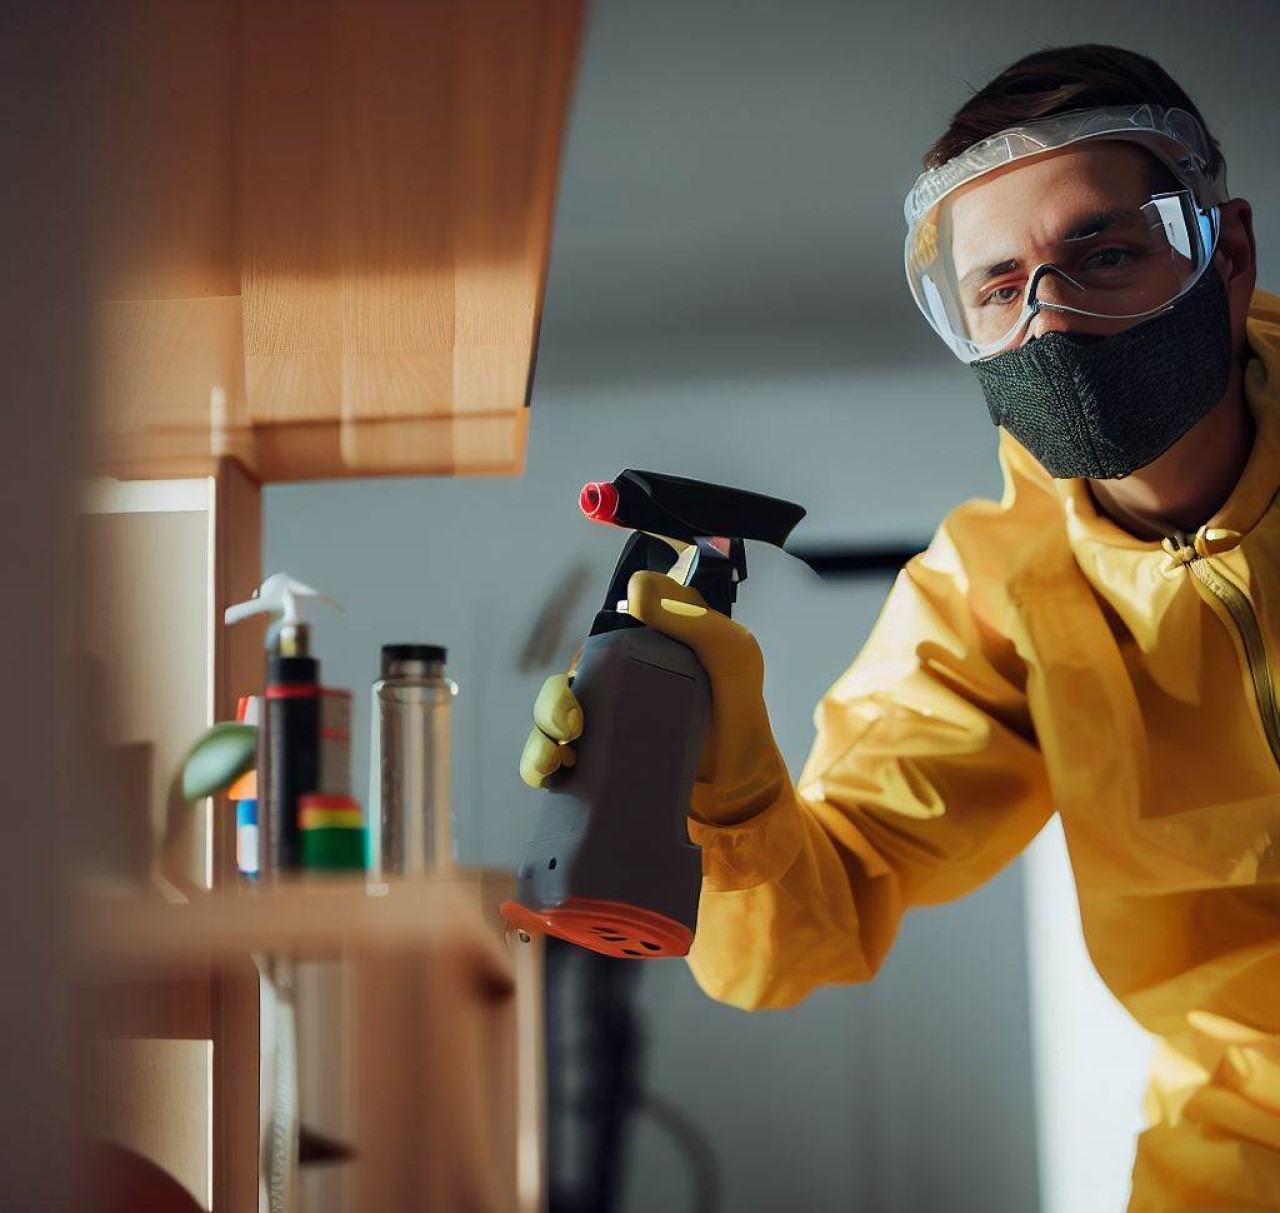 Exterminador usa pesticida para rociar en un estante de la sala de estar